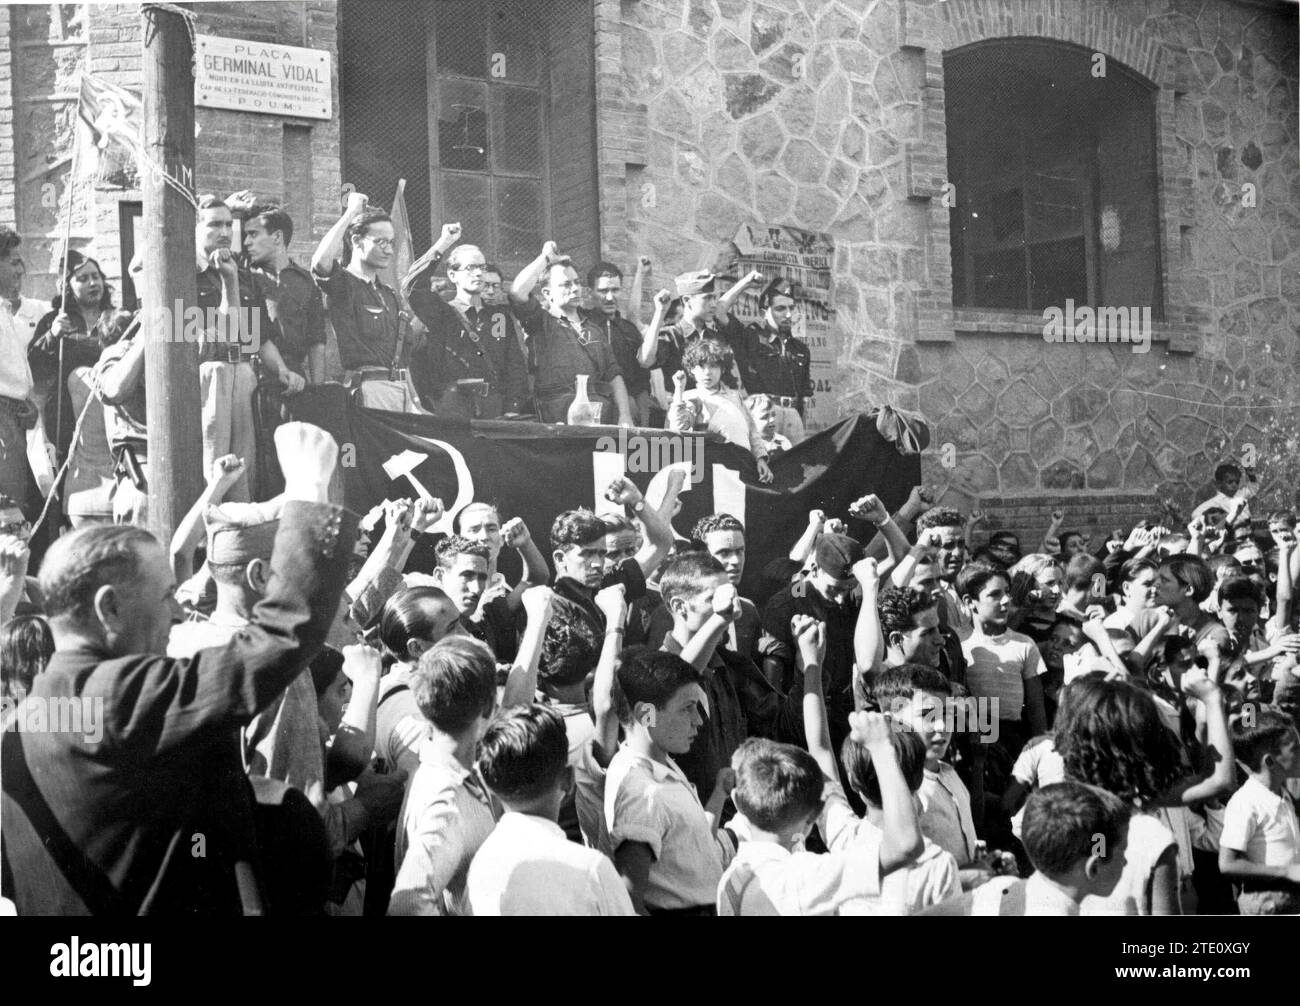 Inaugurazione della Plaza de Germinal Vidal, che morì per la causa repubblicana il 19 luglio 1936. Crediti: Album / Archivo ABC / Josep Brangulí Foto Stock